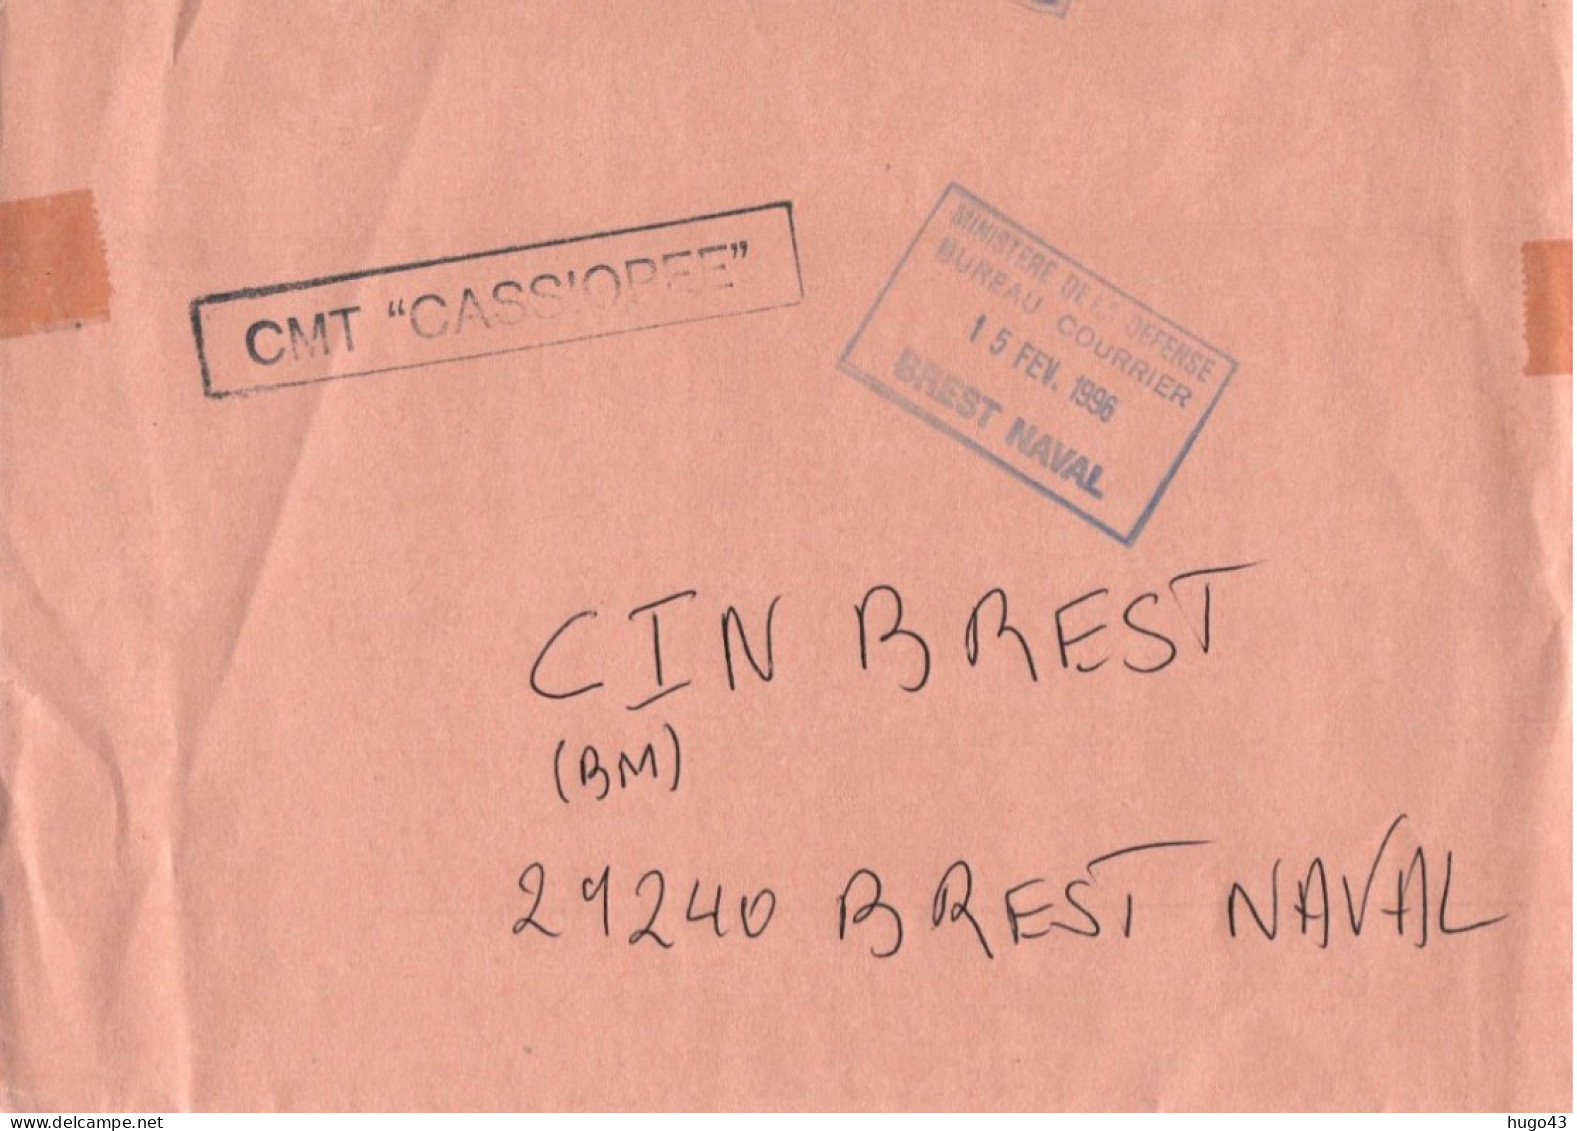 ENVELOPPE  AVEC CACHET CMT CASSIOPEE LE 15/02/1996 BREST NAVAL - Seepost